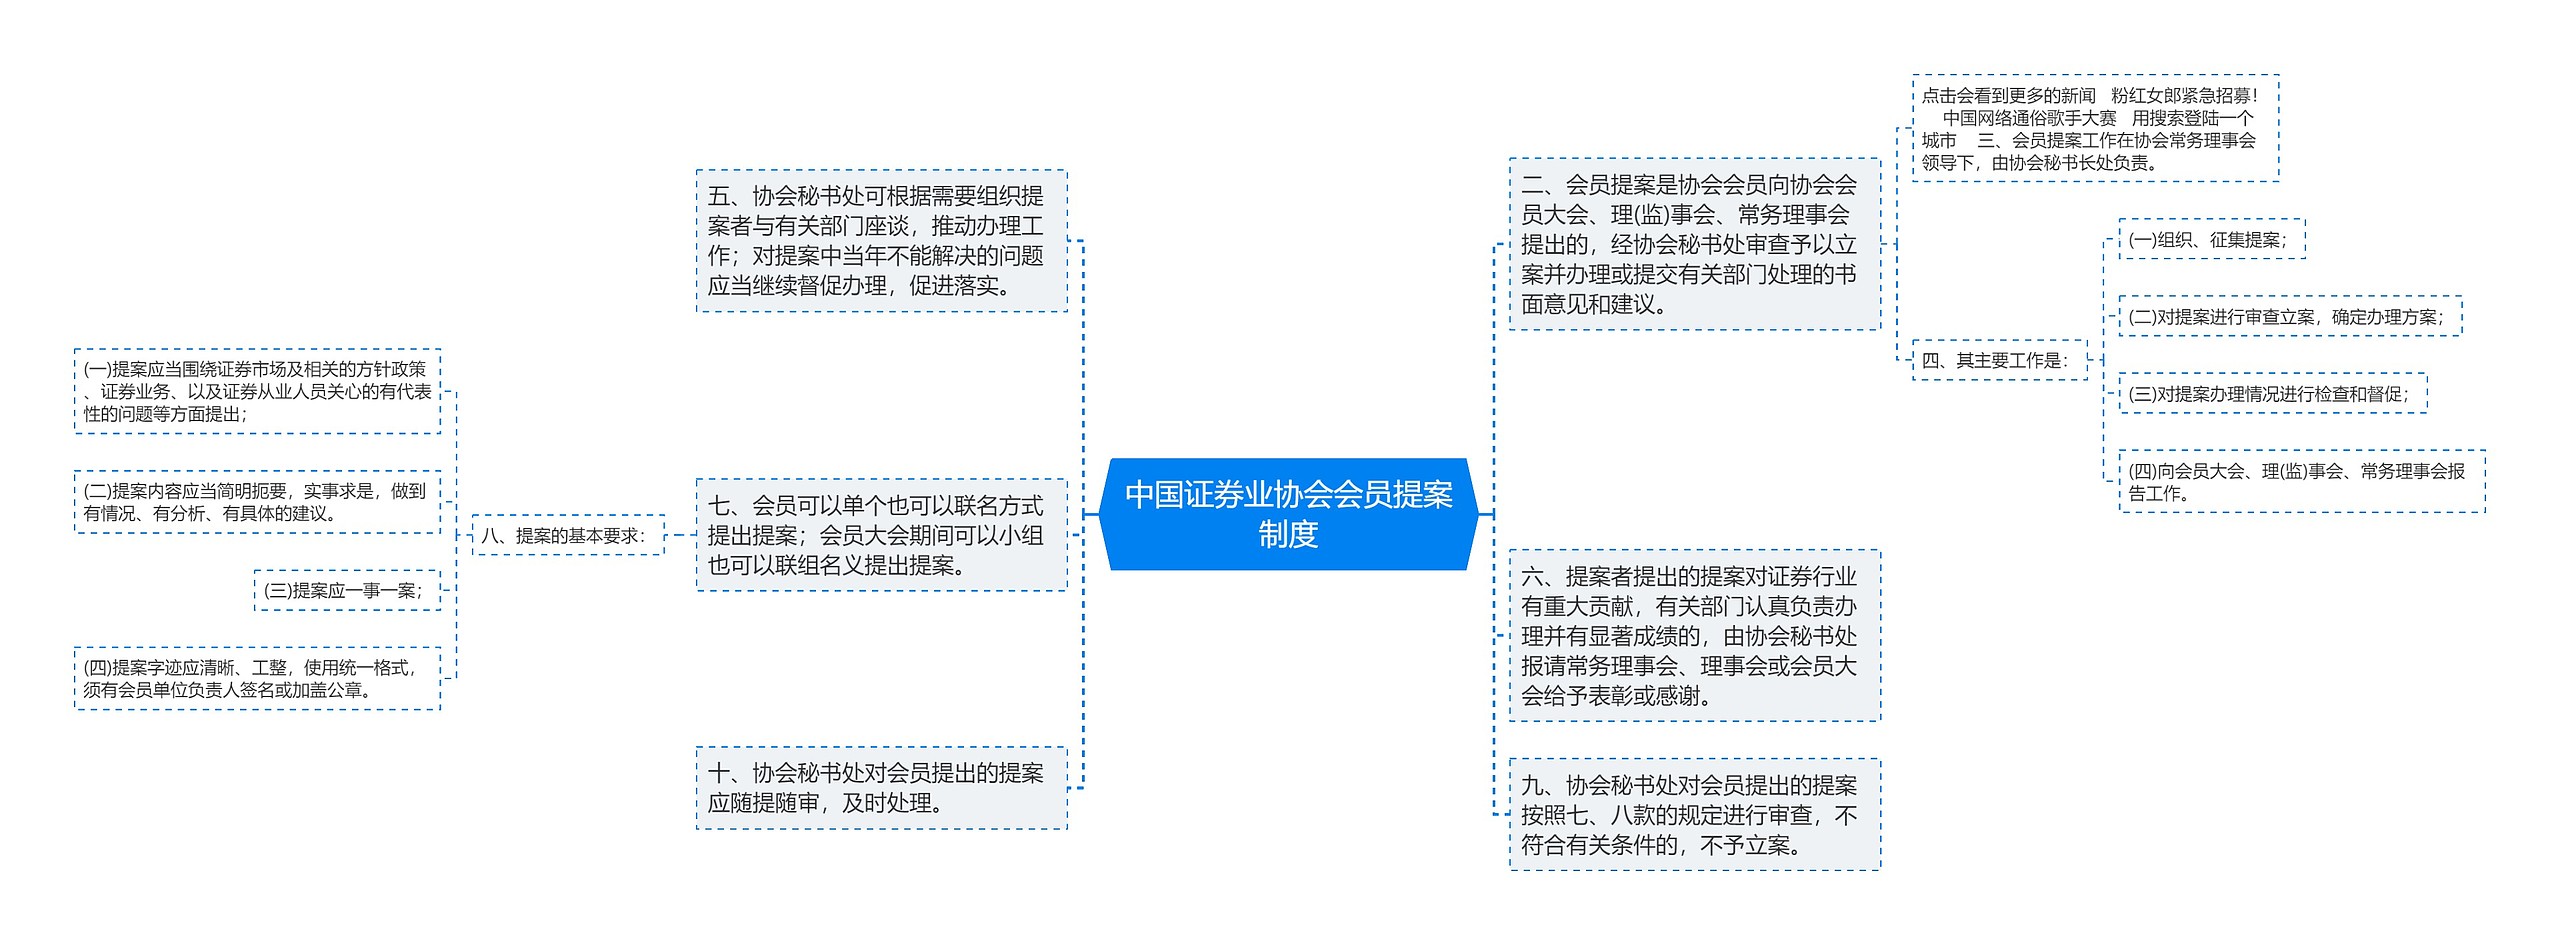 中国证券业协会会员提案制度